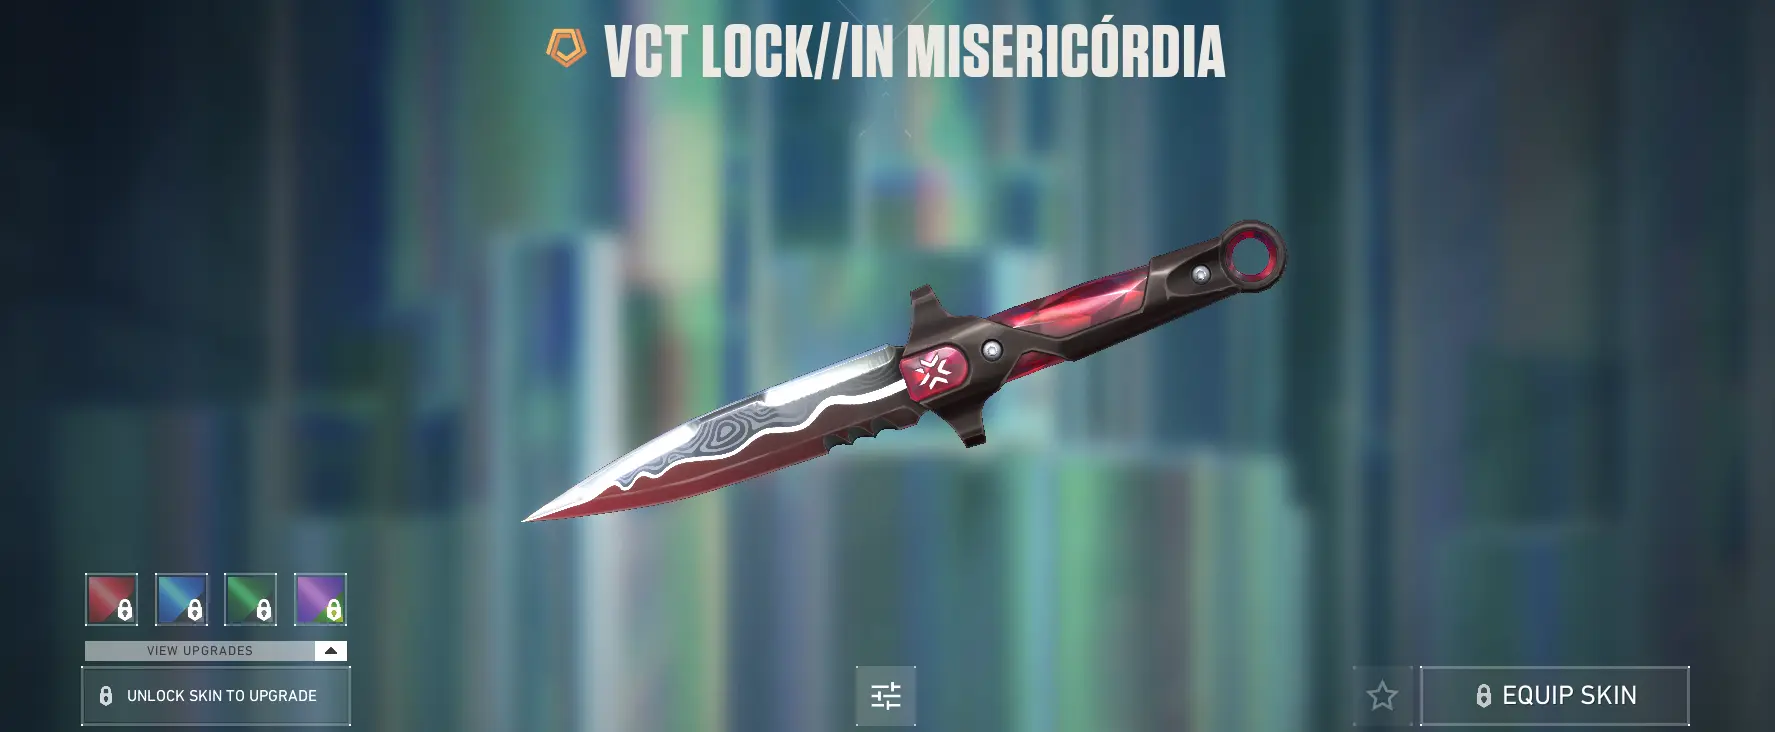 VCT LOCK//IN knife